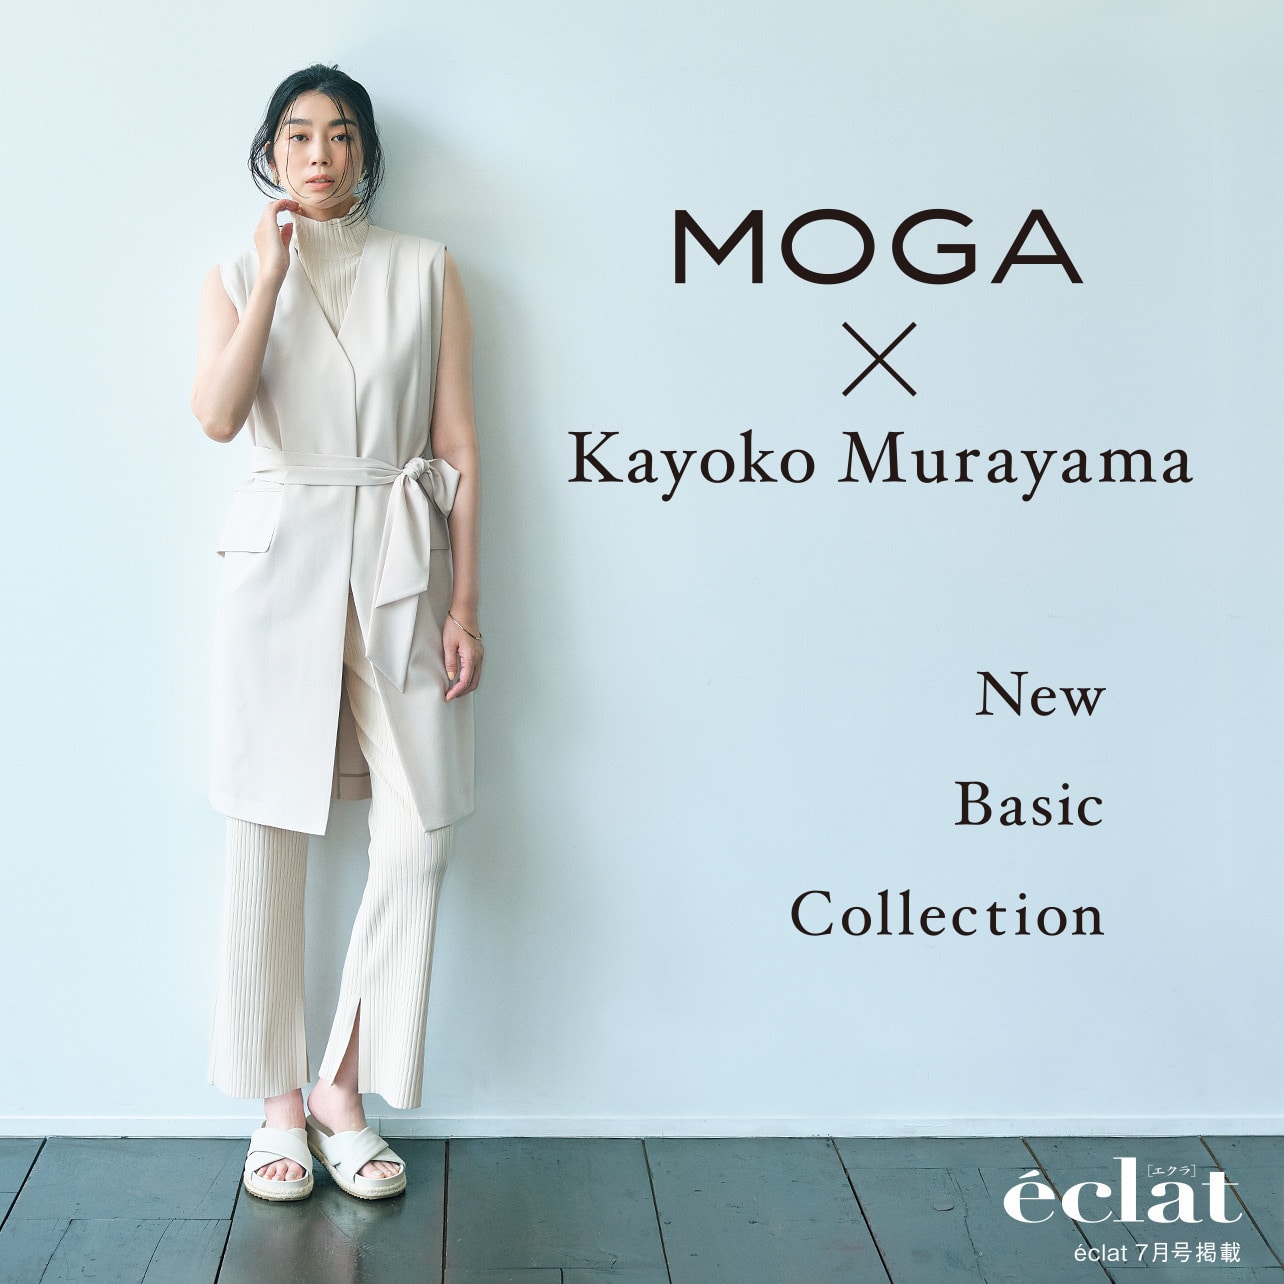 MOGAxKayoko Murayama